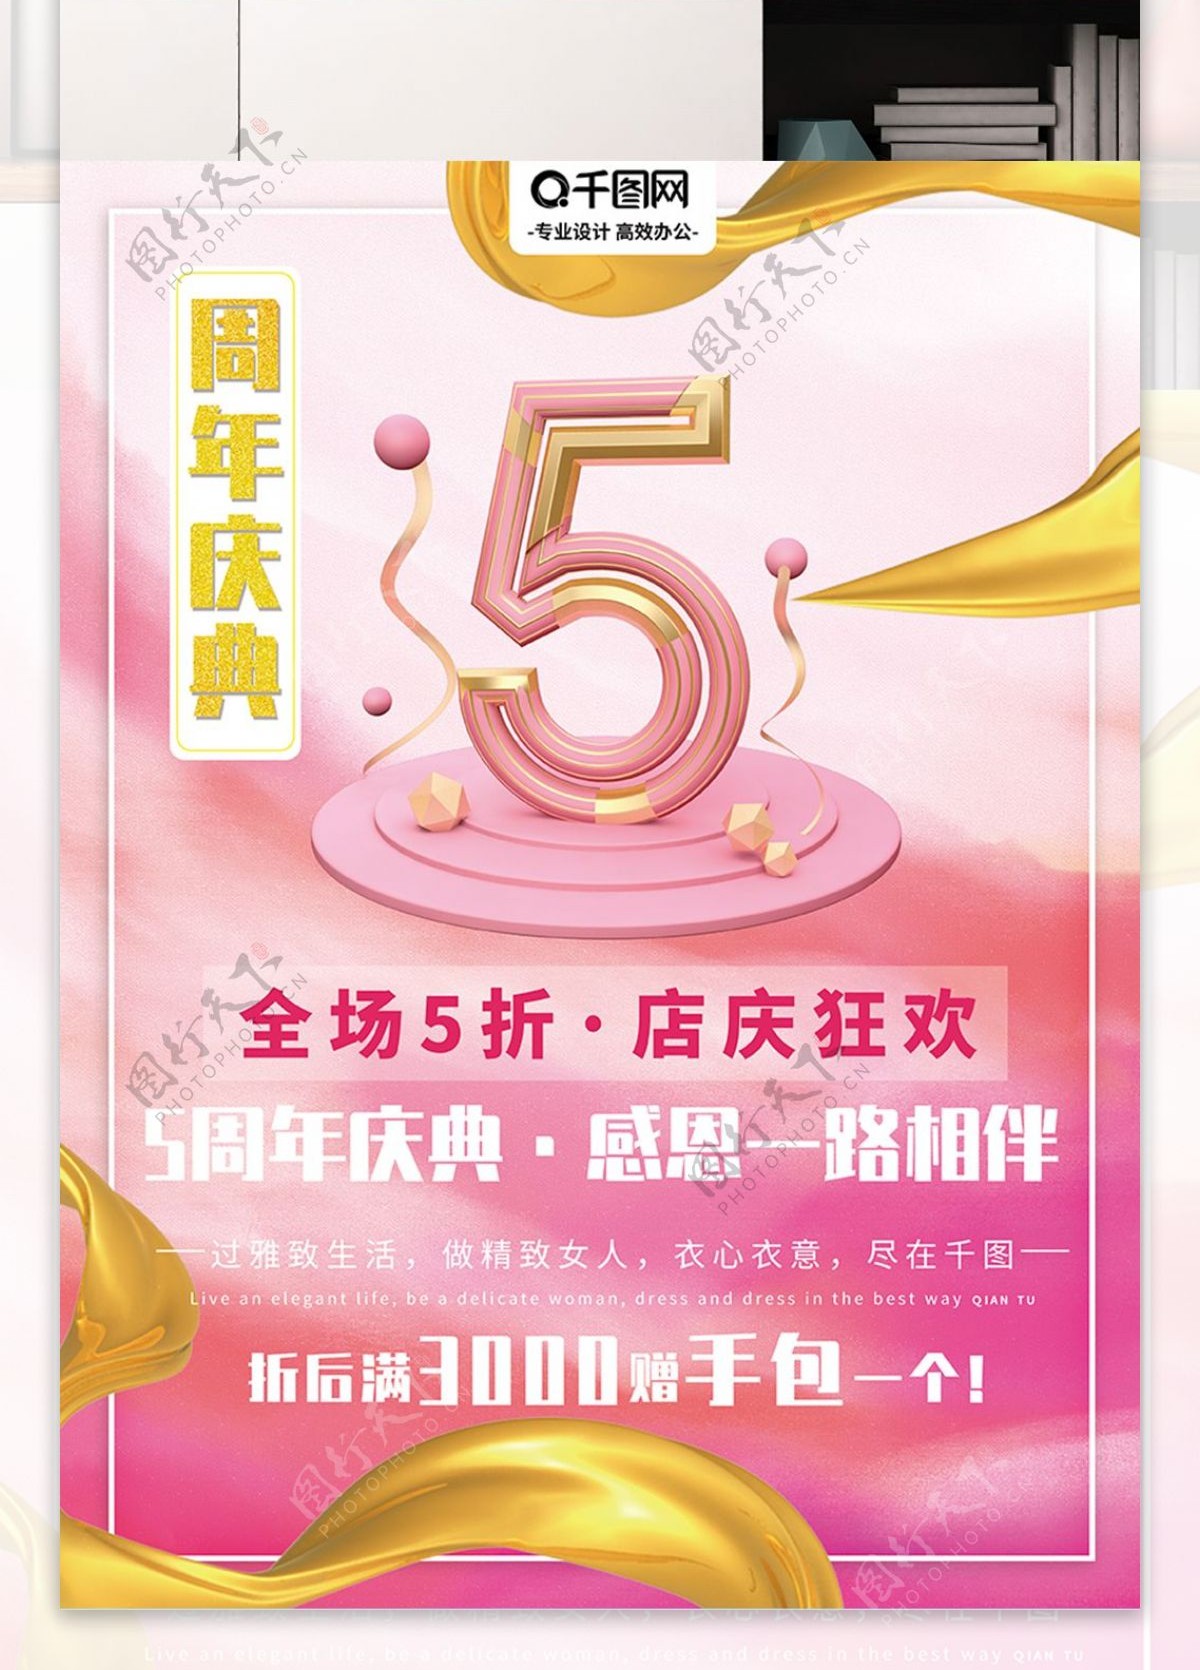 海报5周年店庆庆典5折优惠促销女人粉色